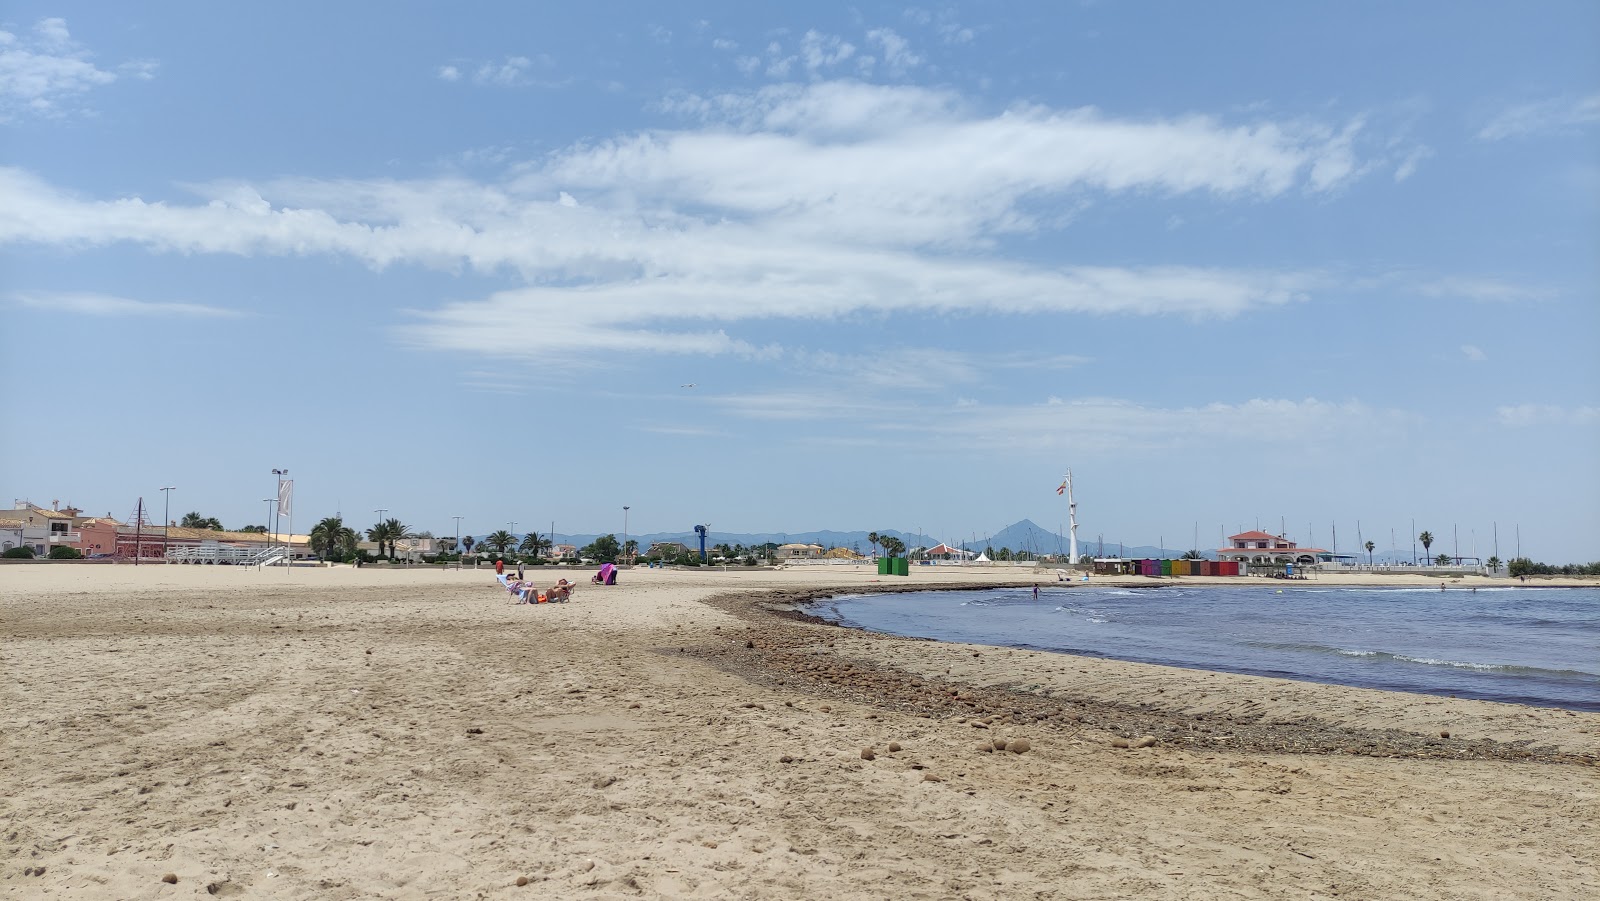 Oliva Plajı'in fotoğrafı çok temiz temizlik seviyesi ile